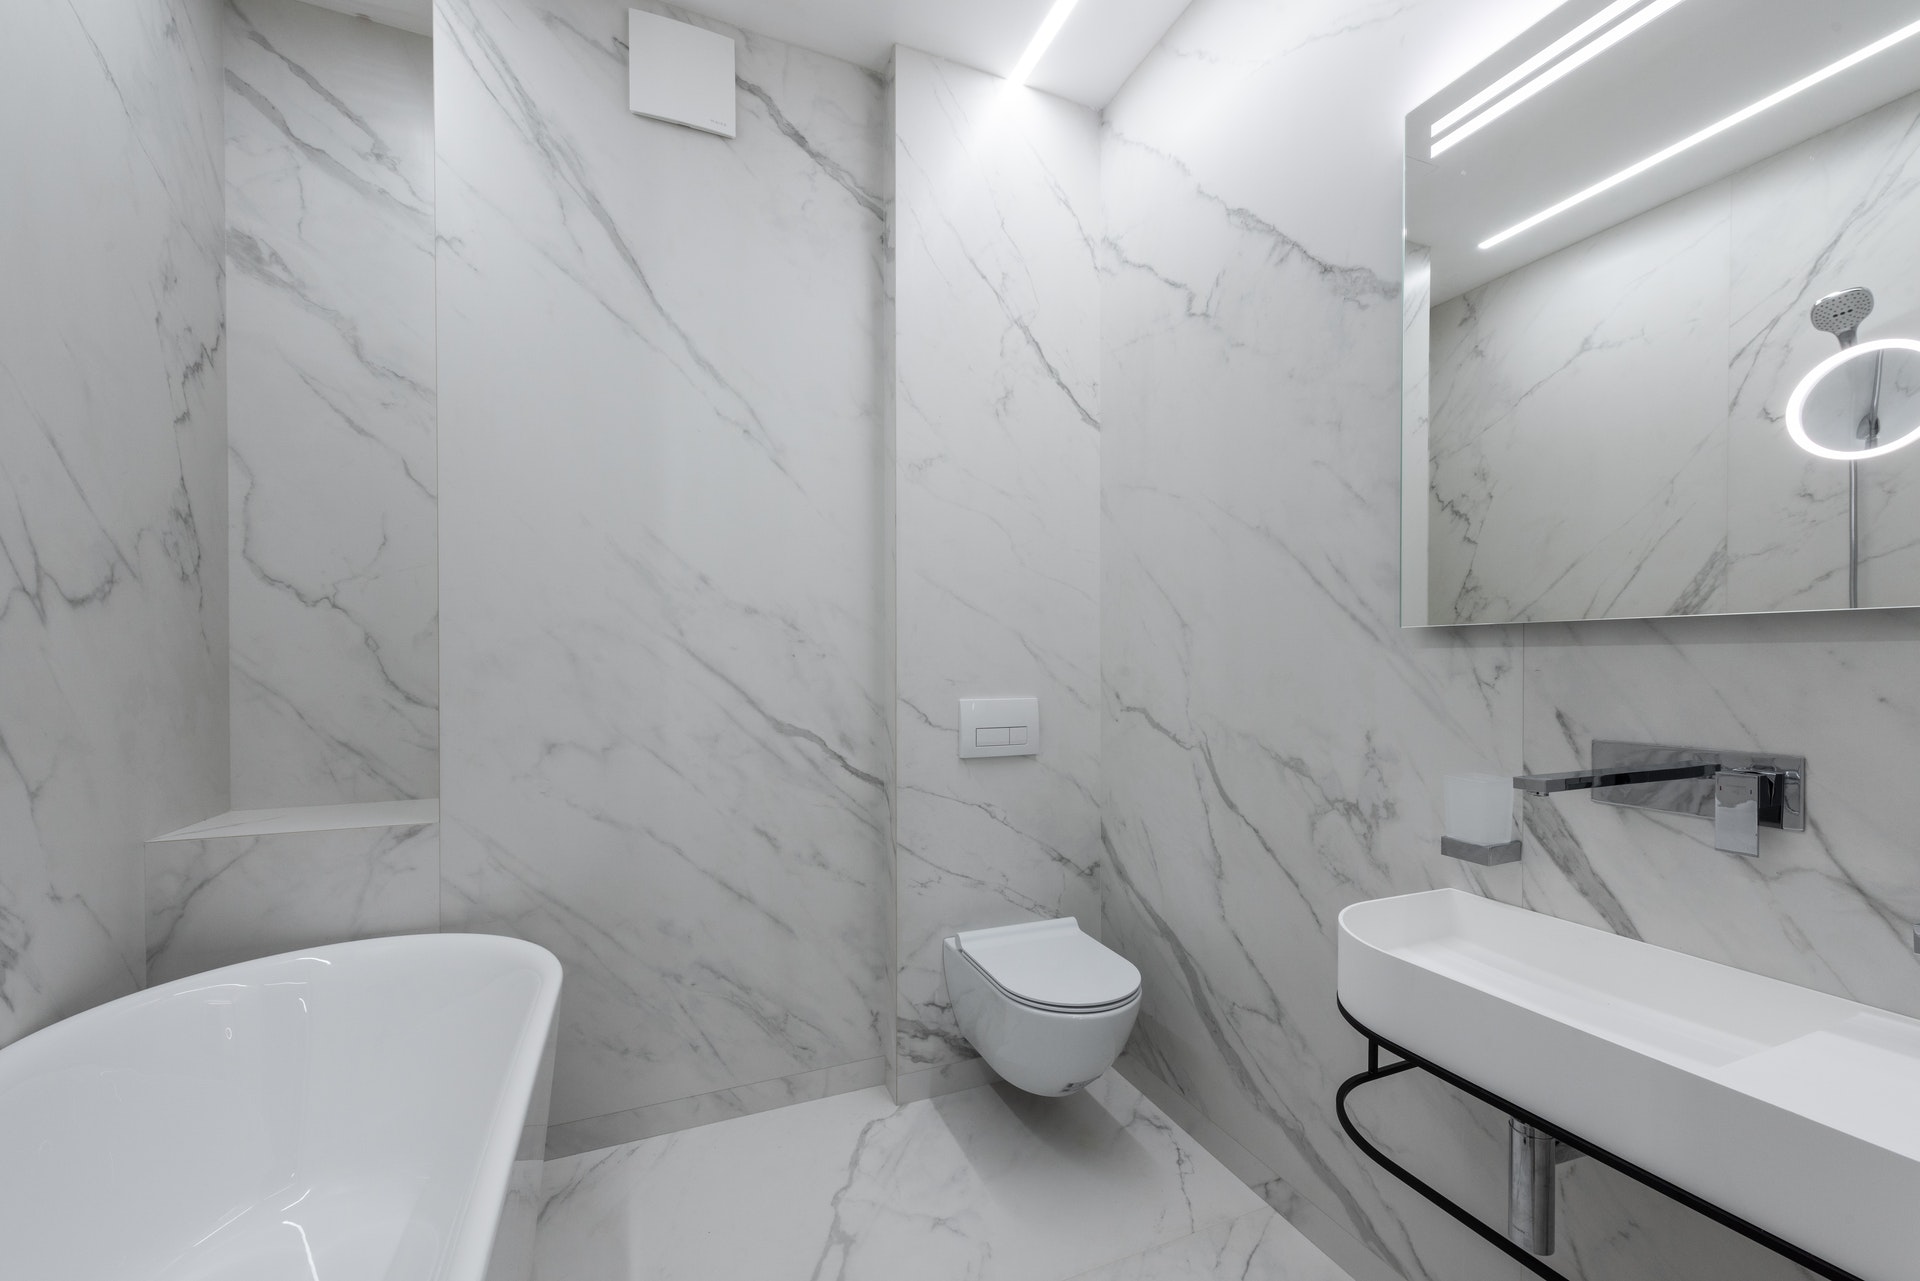 Mẫu gạch ốp và lát phòng tắm Viglacera Platinum 2024 sẽ mang bạn đến cảm giác thật sự lịch lãm, sang trọng và hoàn hảo. Sử dụng sản phẩm cao cấp của Viglacera Platinum sẽ giúp cho không gian phòng tắm của bạn trở nên hoàn hảo hơn bao giờ hết.